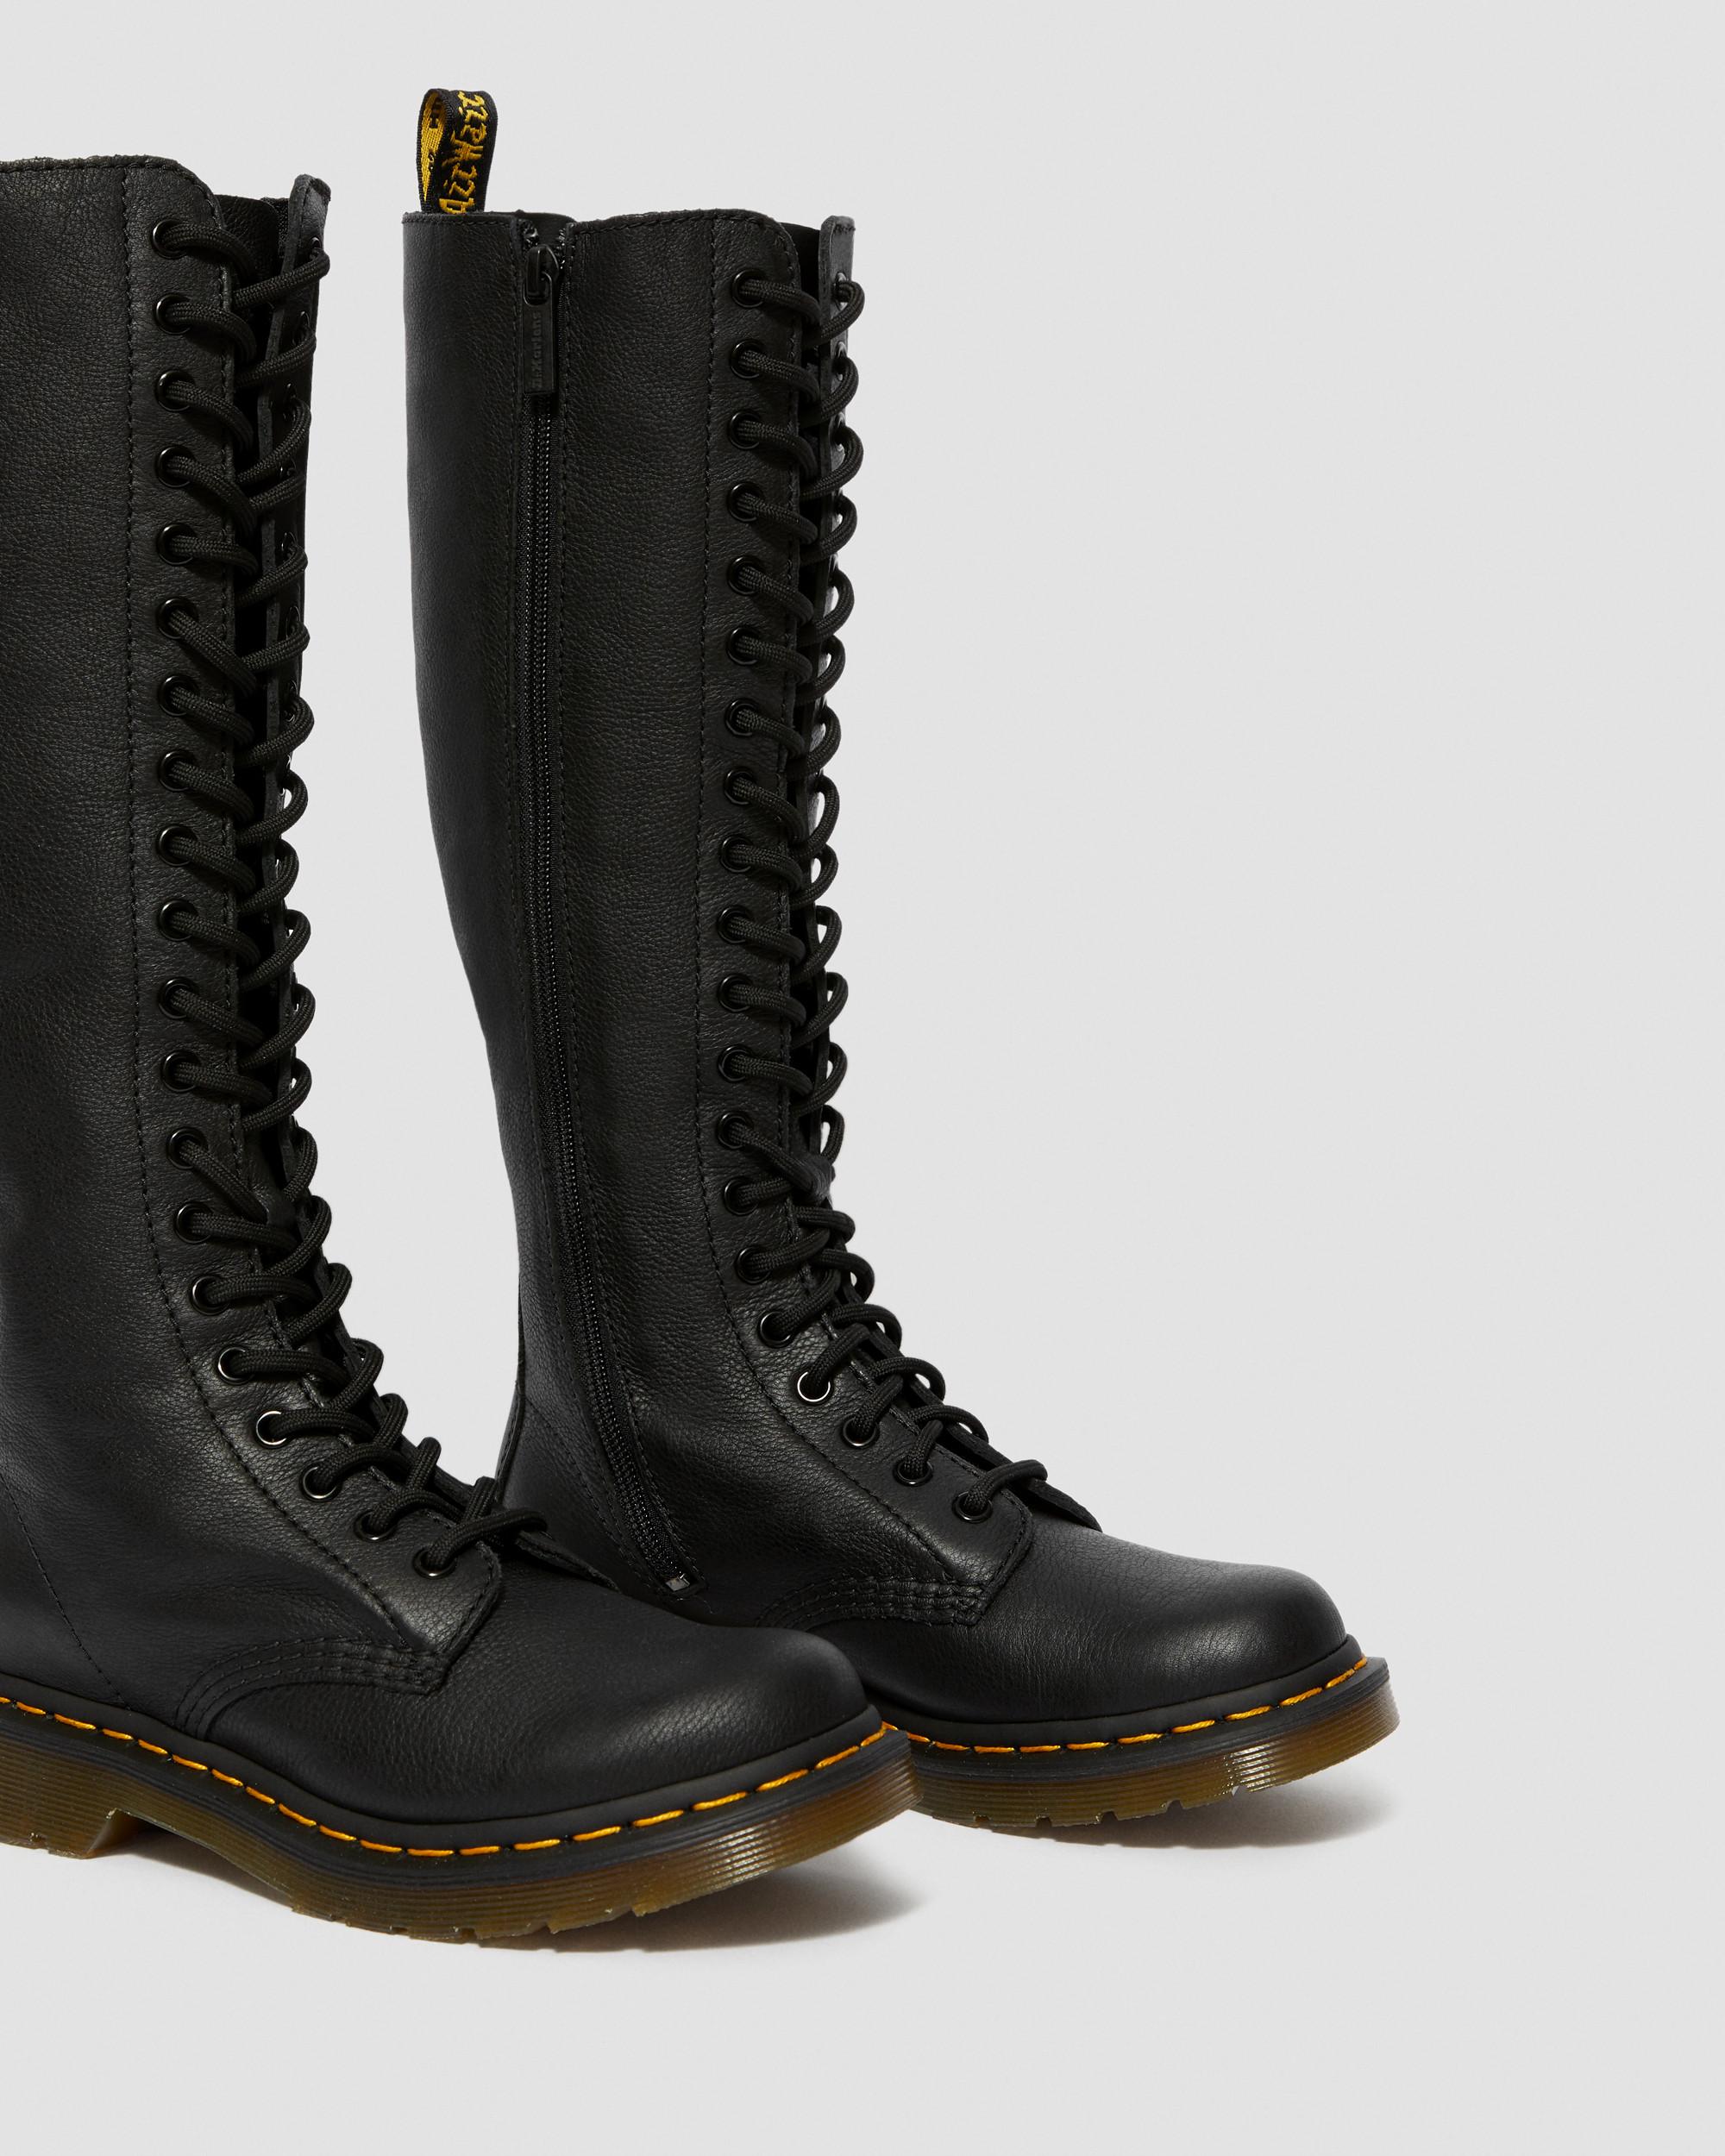 Toeschouwer Shilling Maak een naam 1B60 Virginia Leather Knee High Boots | Dr. Martens